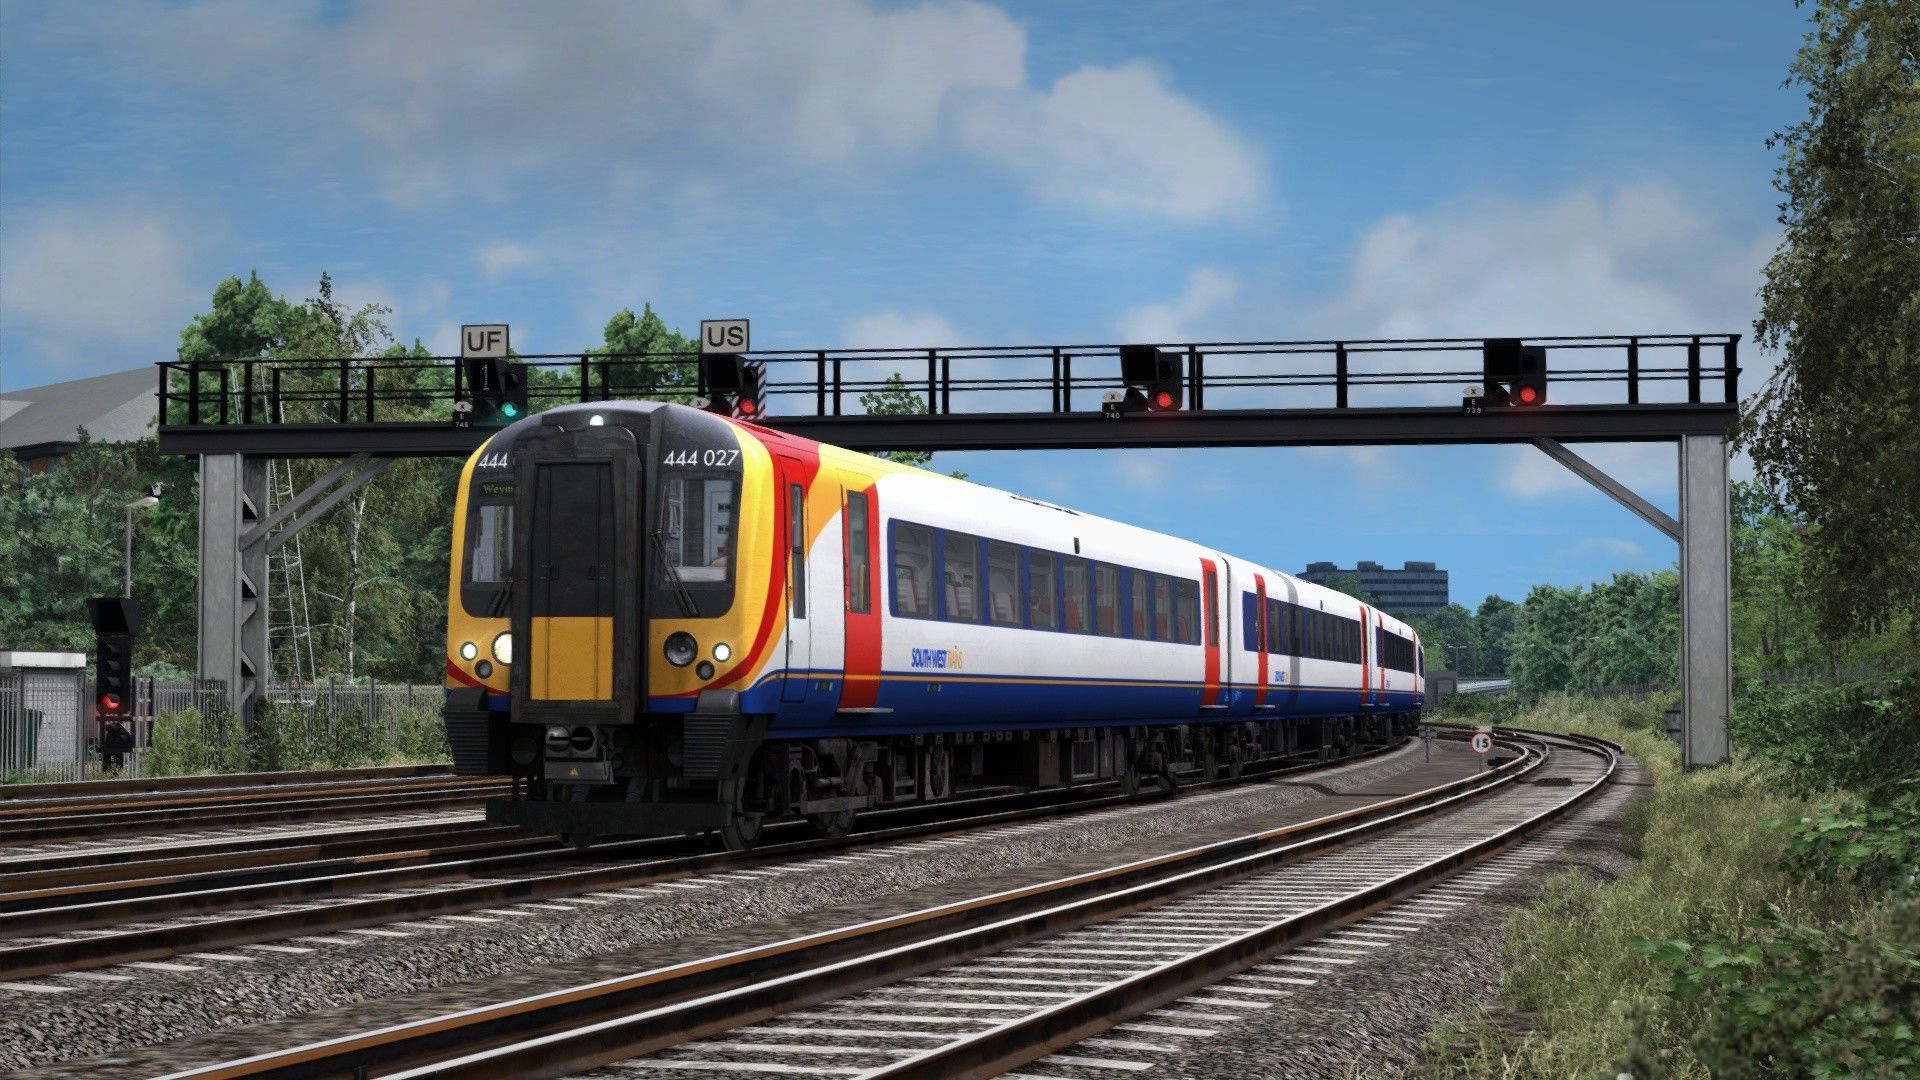 train simulator 2020 xbox